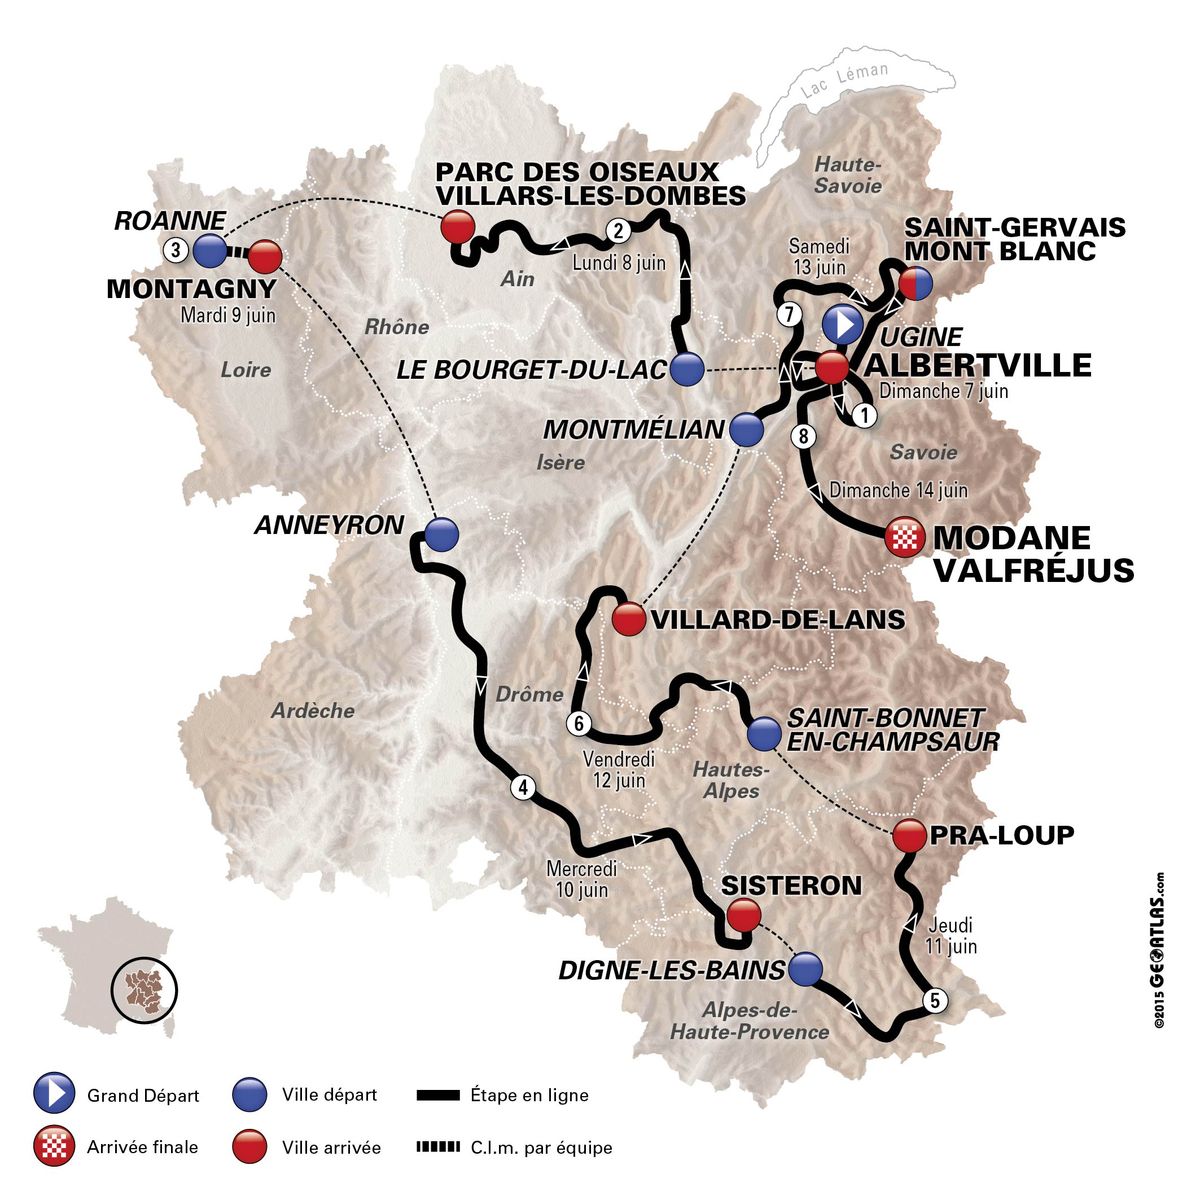 Critérium du Dauphiné route to visit Tour de France mountains Cyclingnews